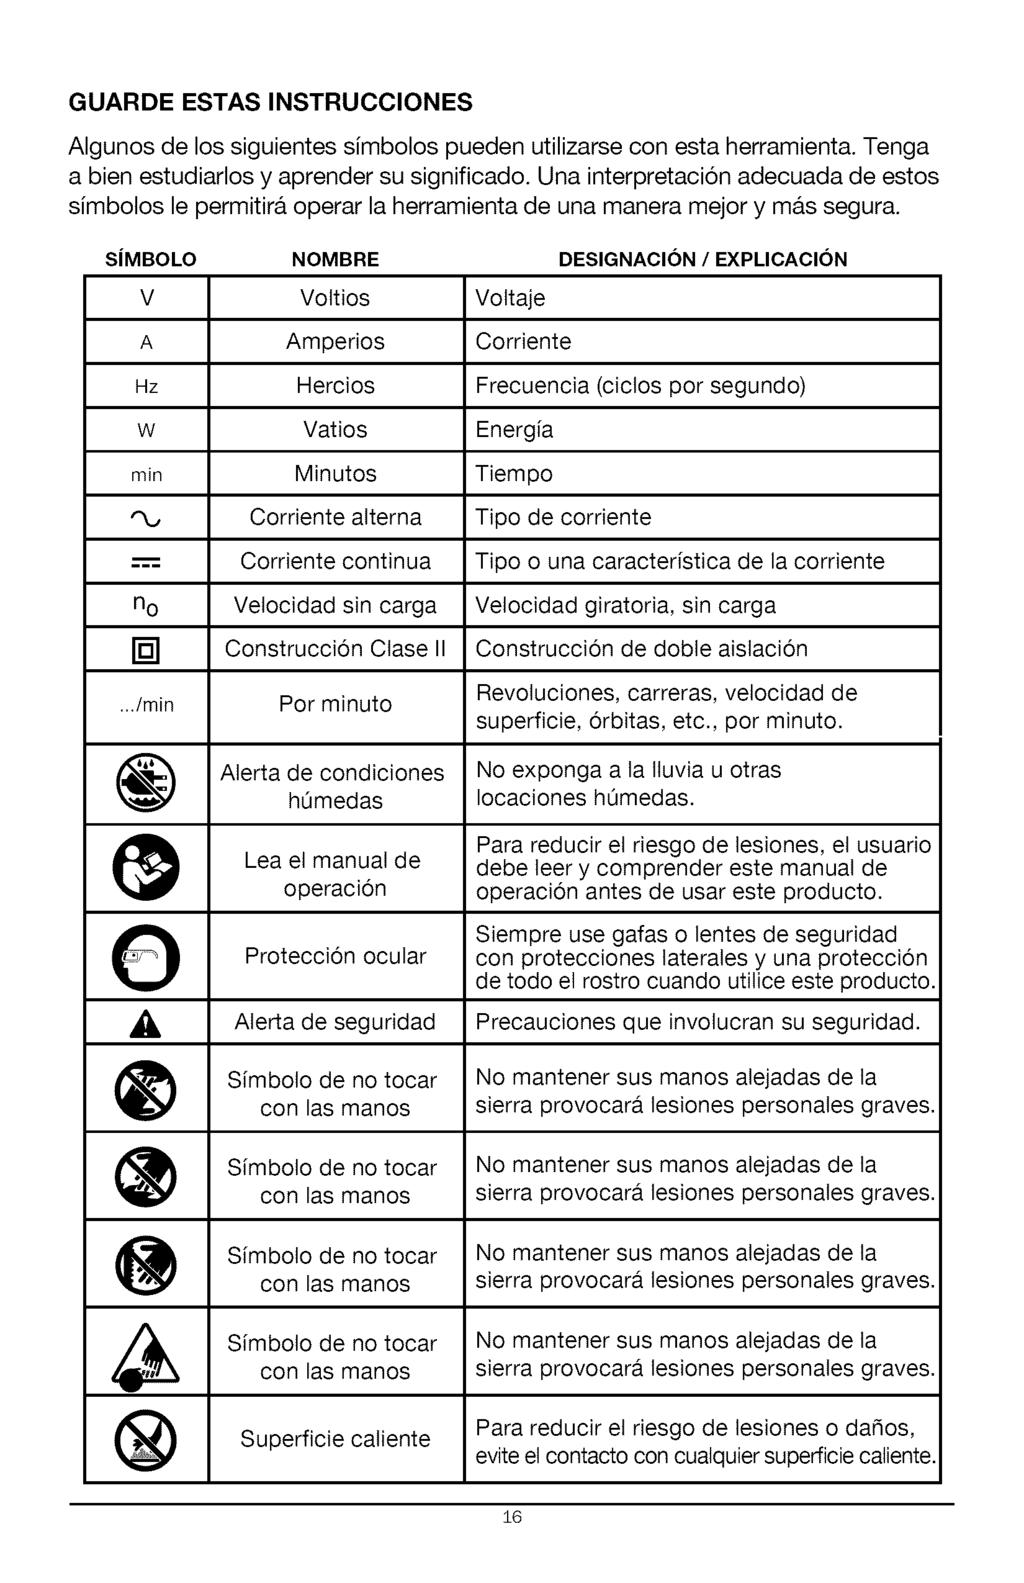 GUARDE ESTAS INSTRUCCIONES Algunos de los siguientes simbolos pueden utilizarse con esta herramienta. Tenga a bien estudiarlos y aprender su significado.